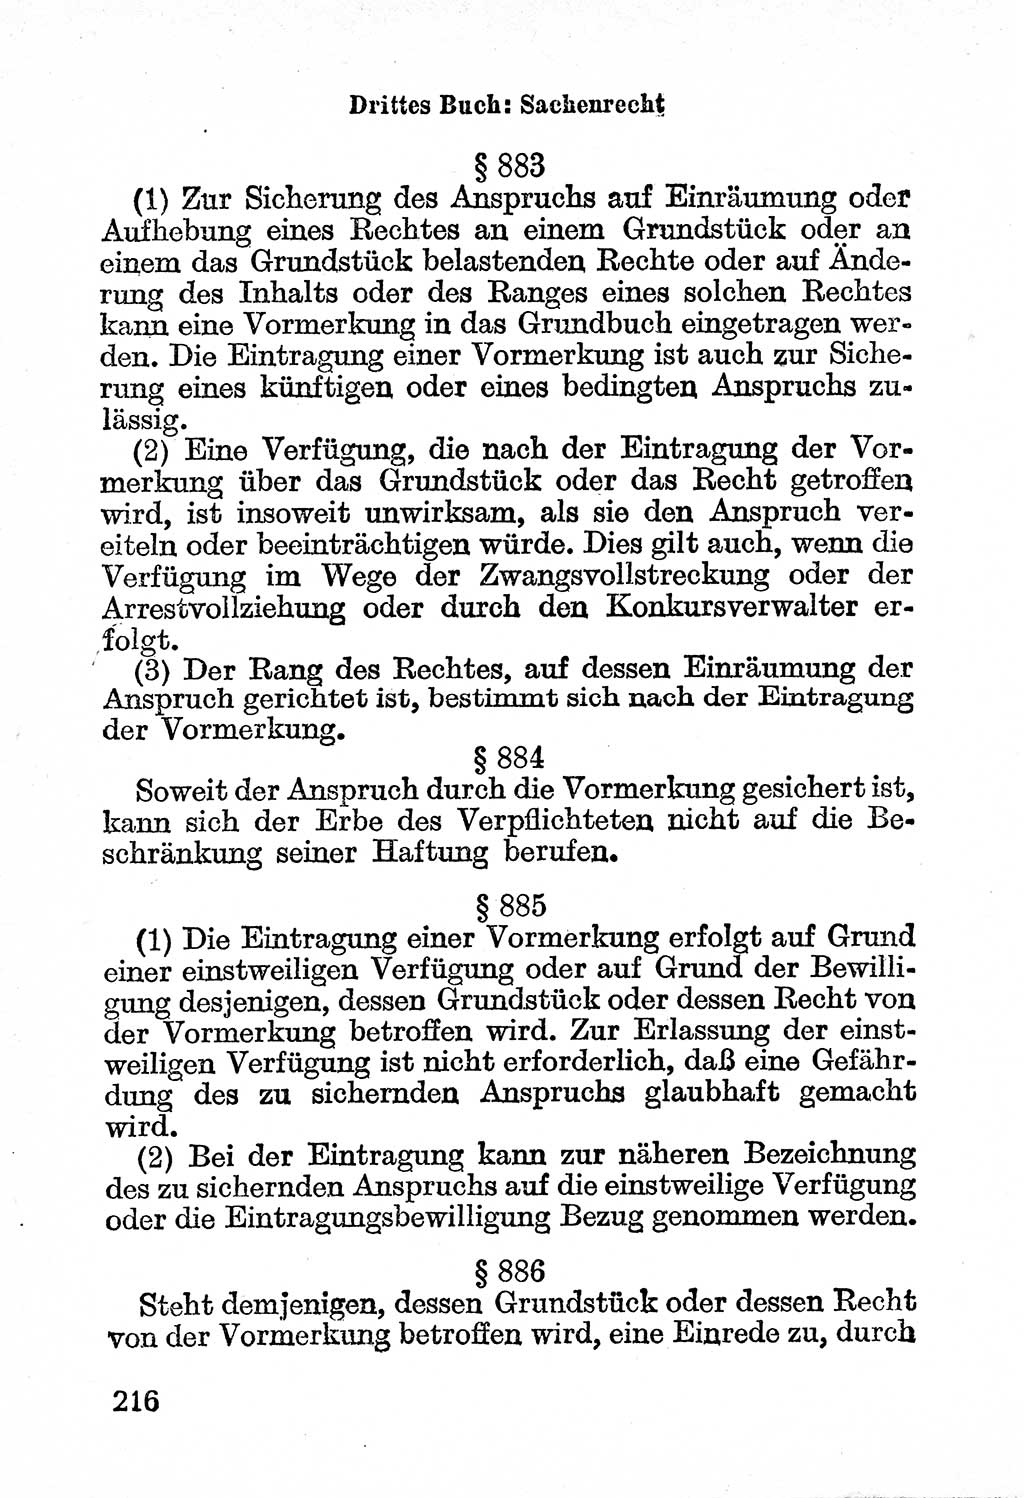 Bürgerliches Gesetzbuch (BGB) nebst wichtigen Nebengesetzen [Deutsche Demokratische Republik (DDR)] 1956, Seite 216 (BGB Nebenges. DDR 1956, S. 216)